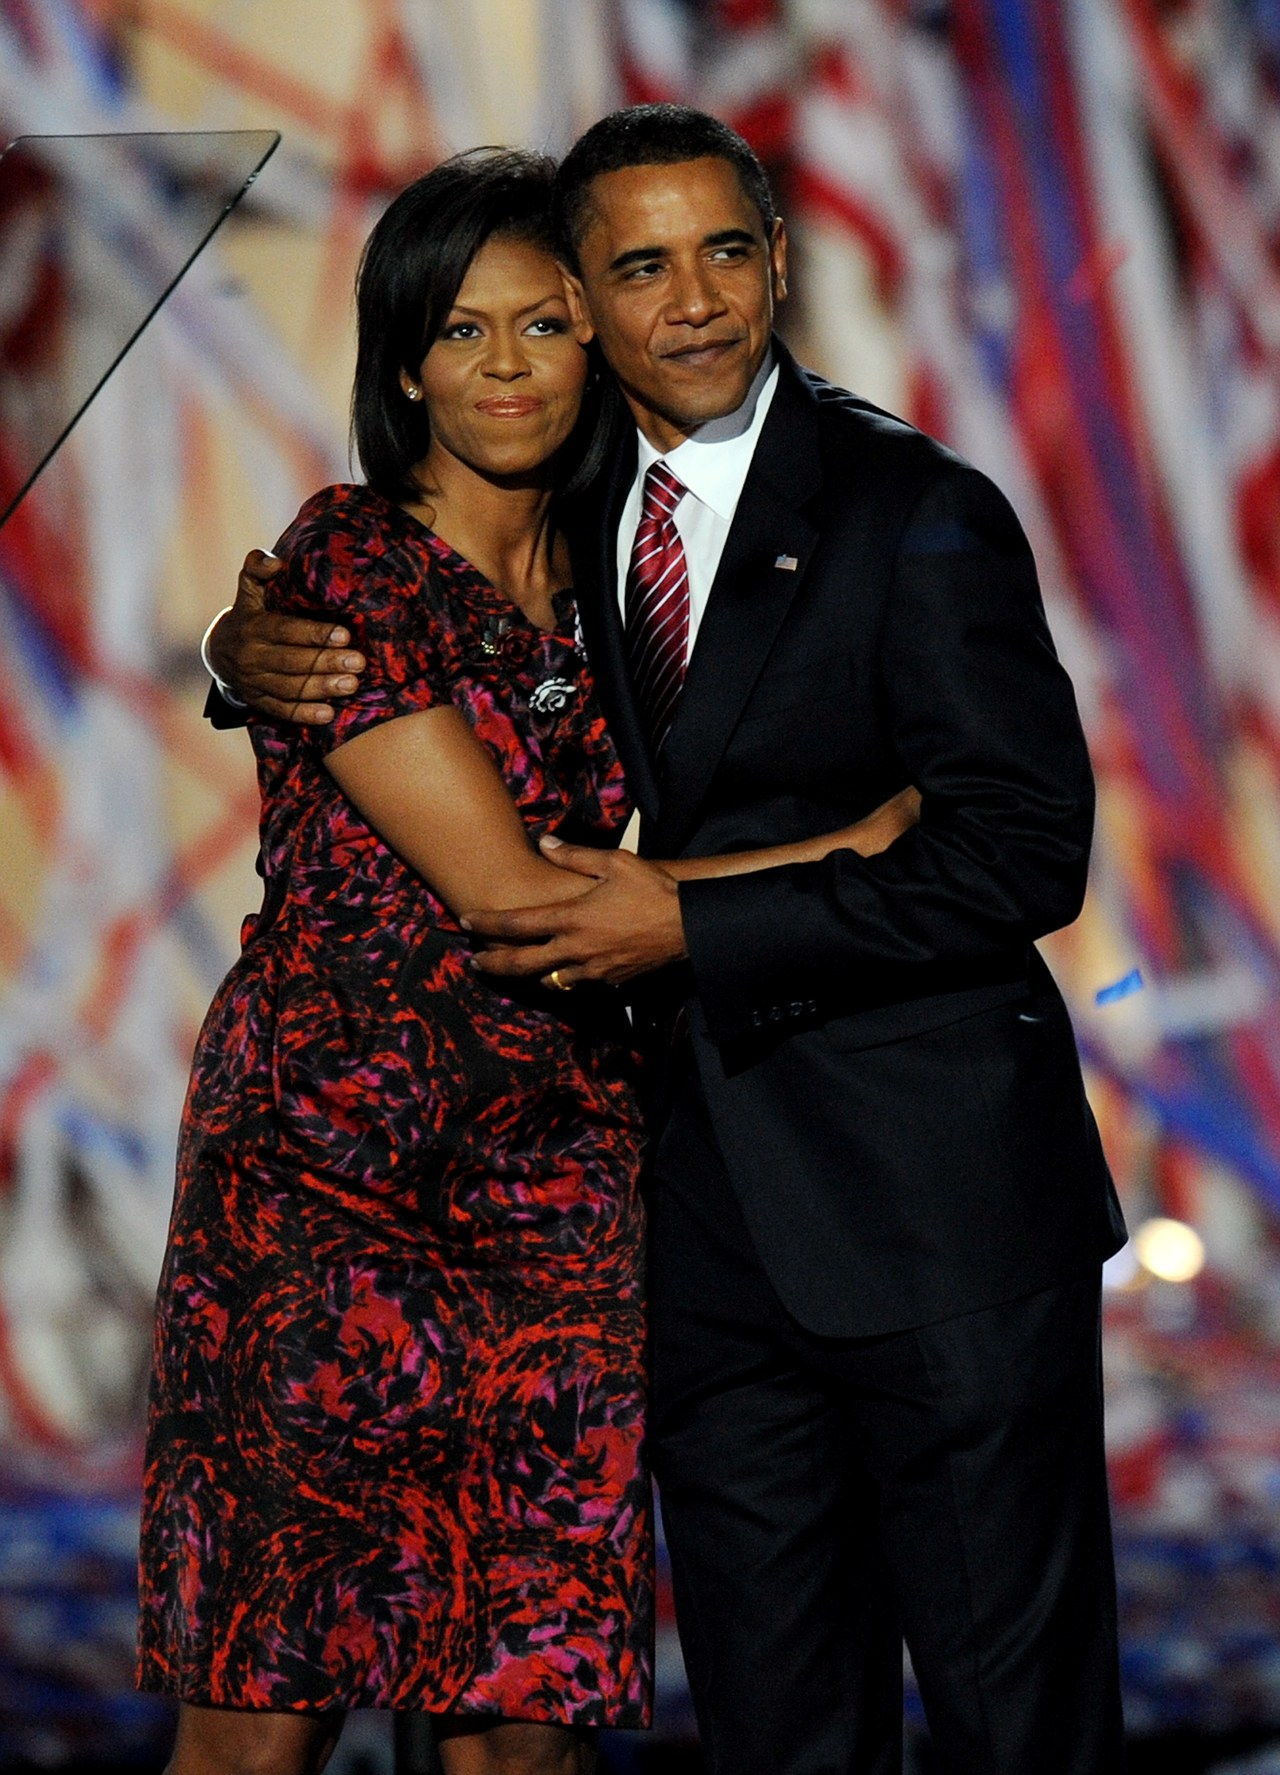 巴拉克 and Michelle stand together after his speech at the 2008 Democratic National Convention in Denver, CO. 